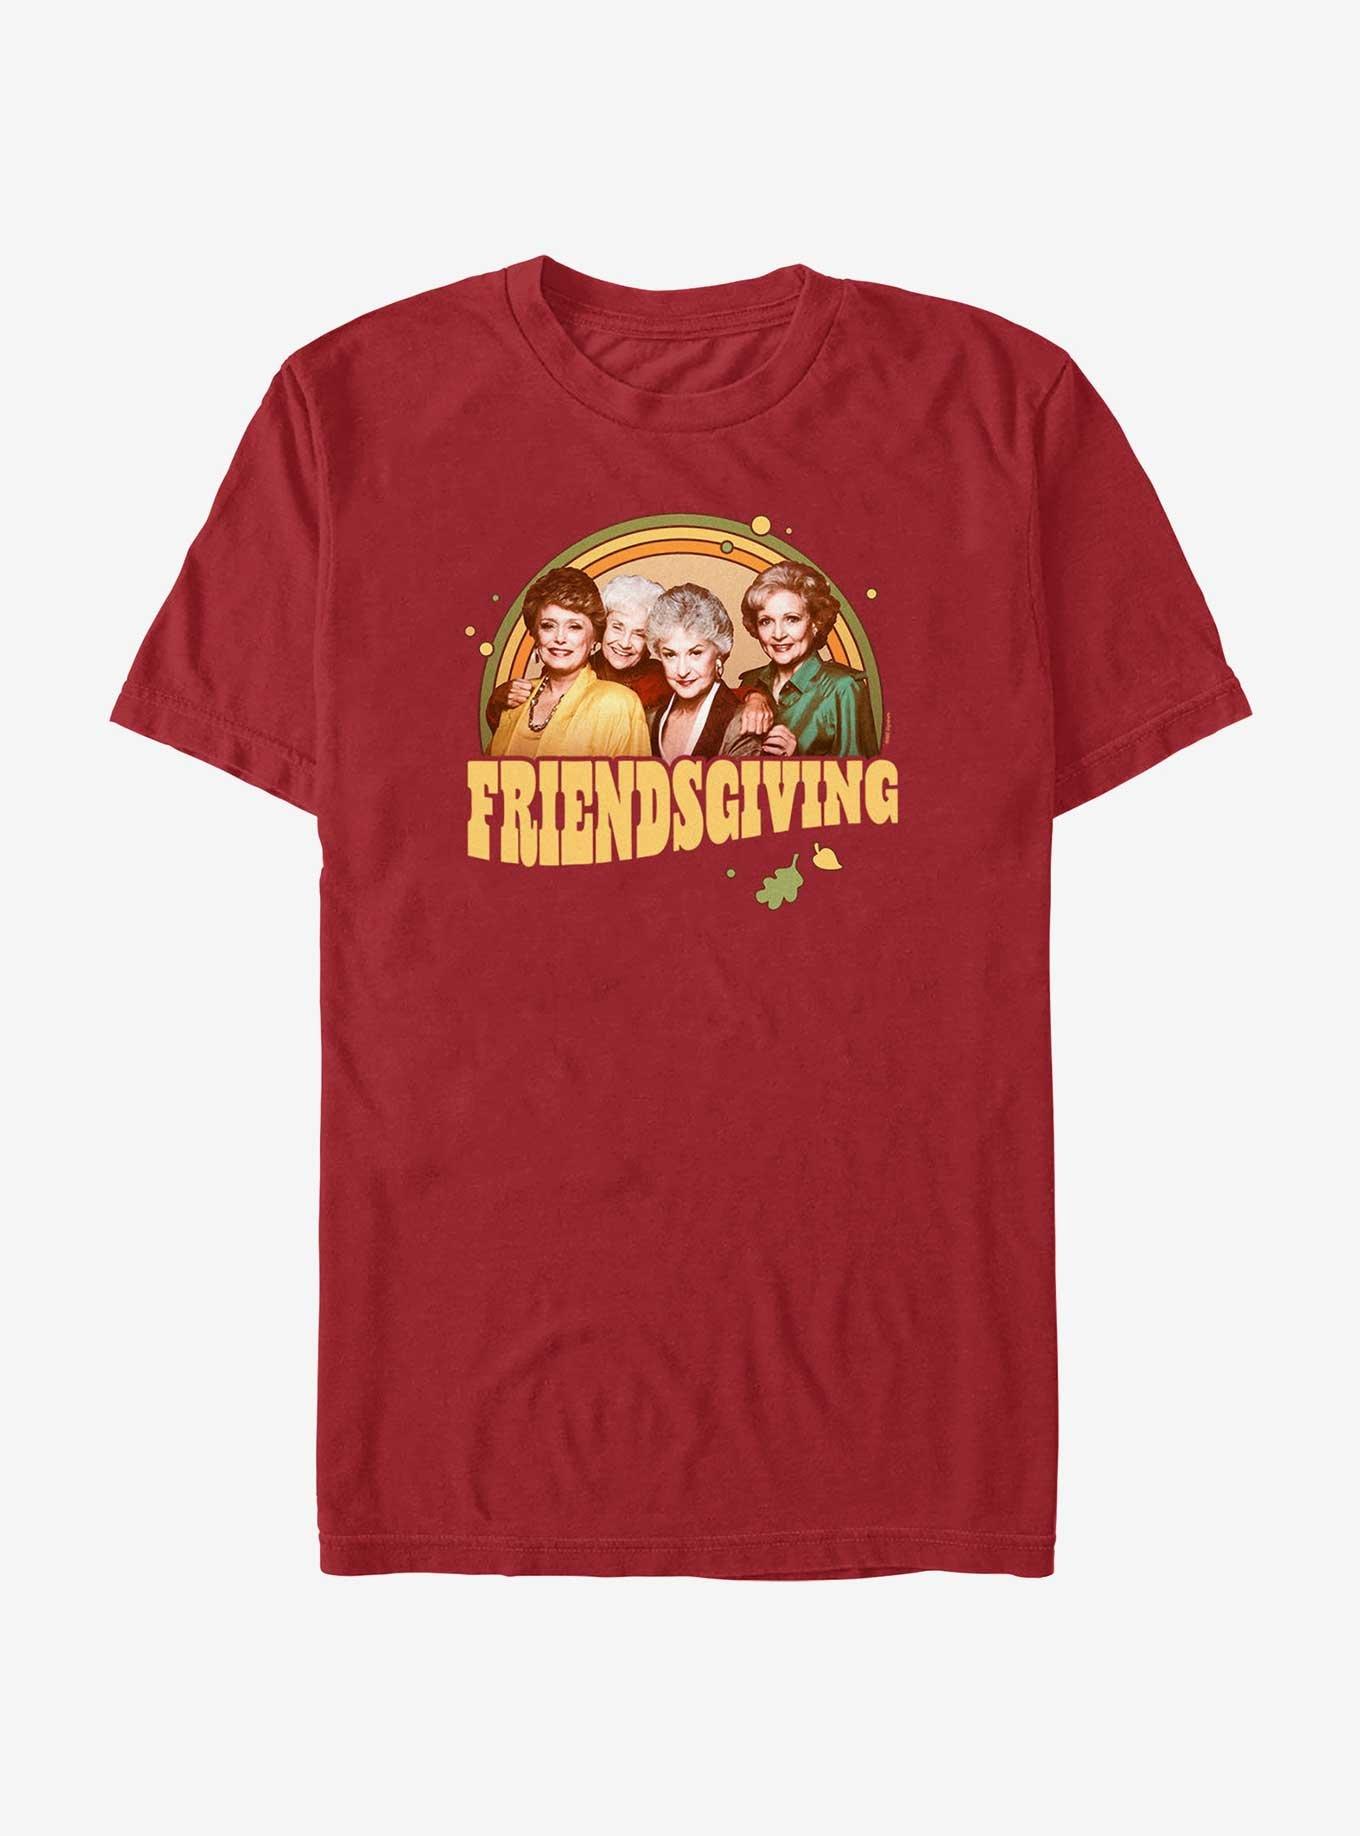 The Golden Girls Friendsgiving T-Shirt